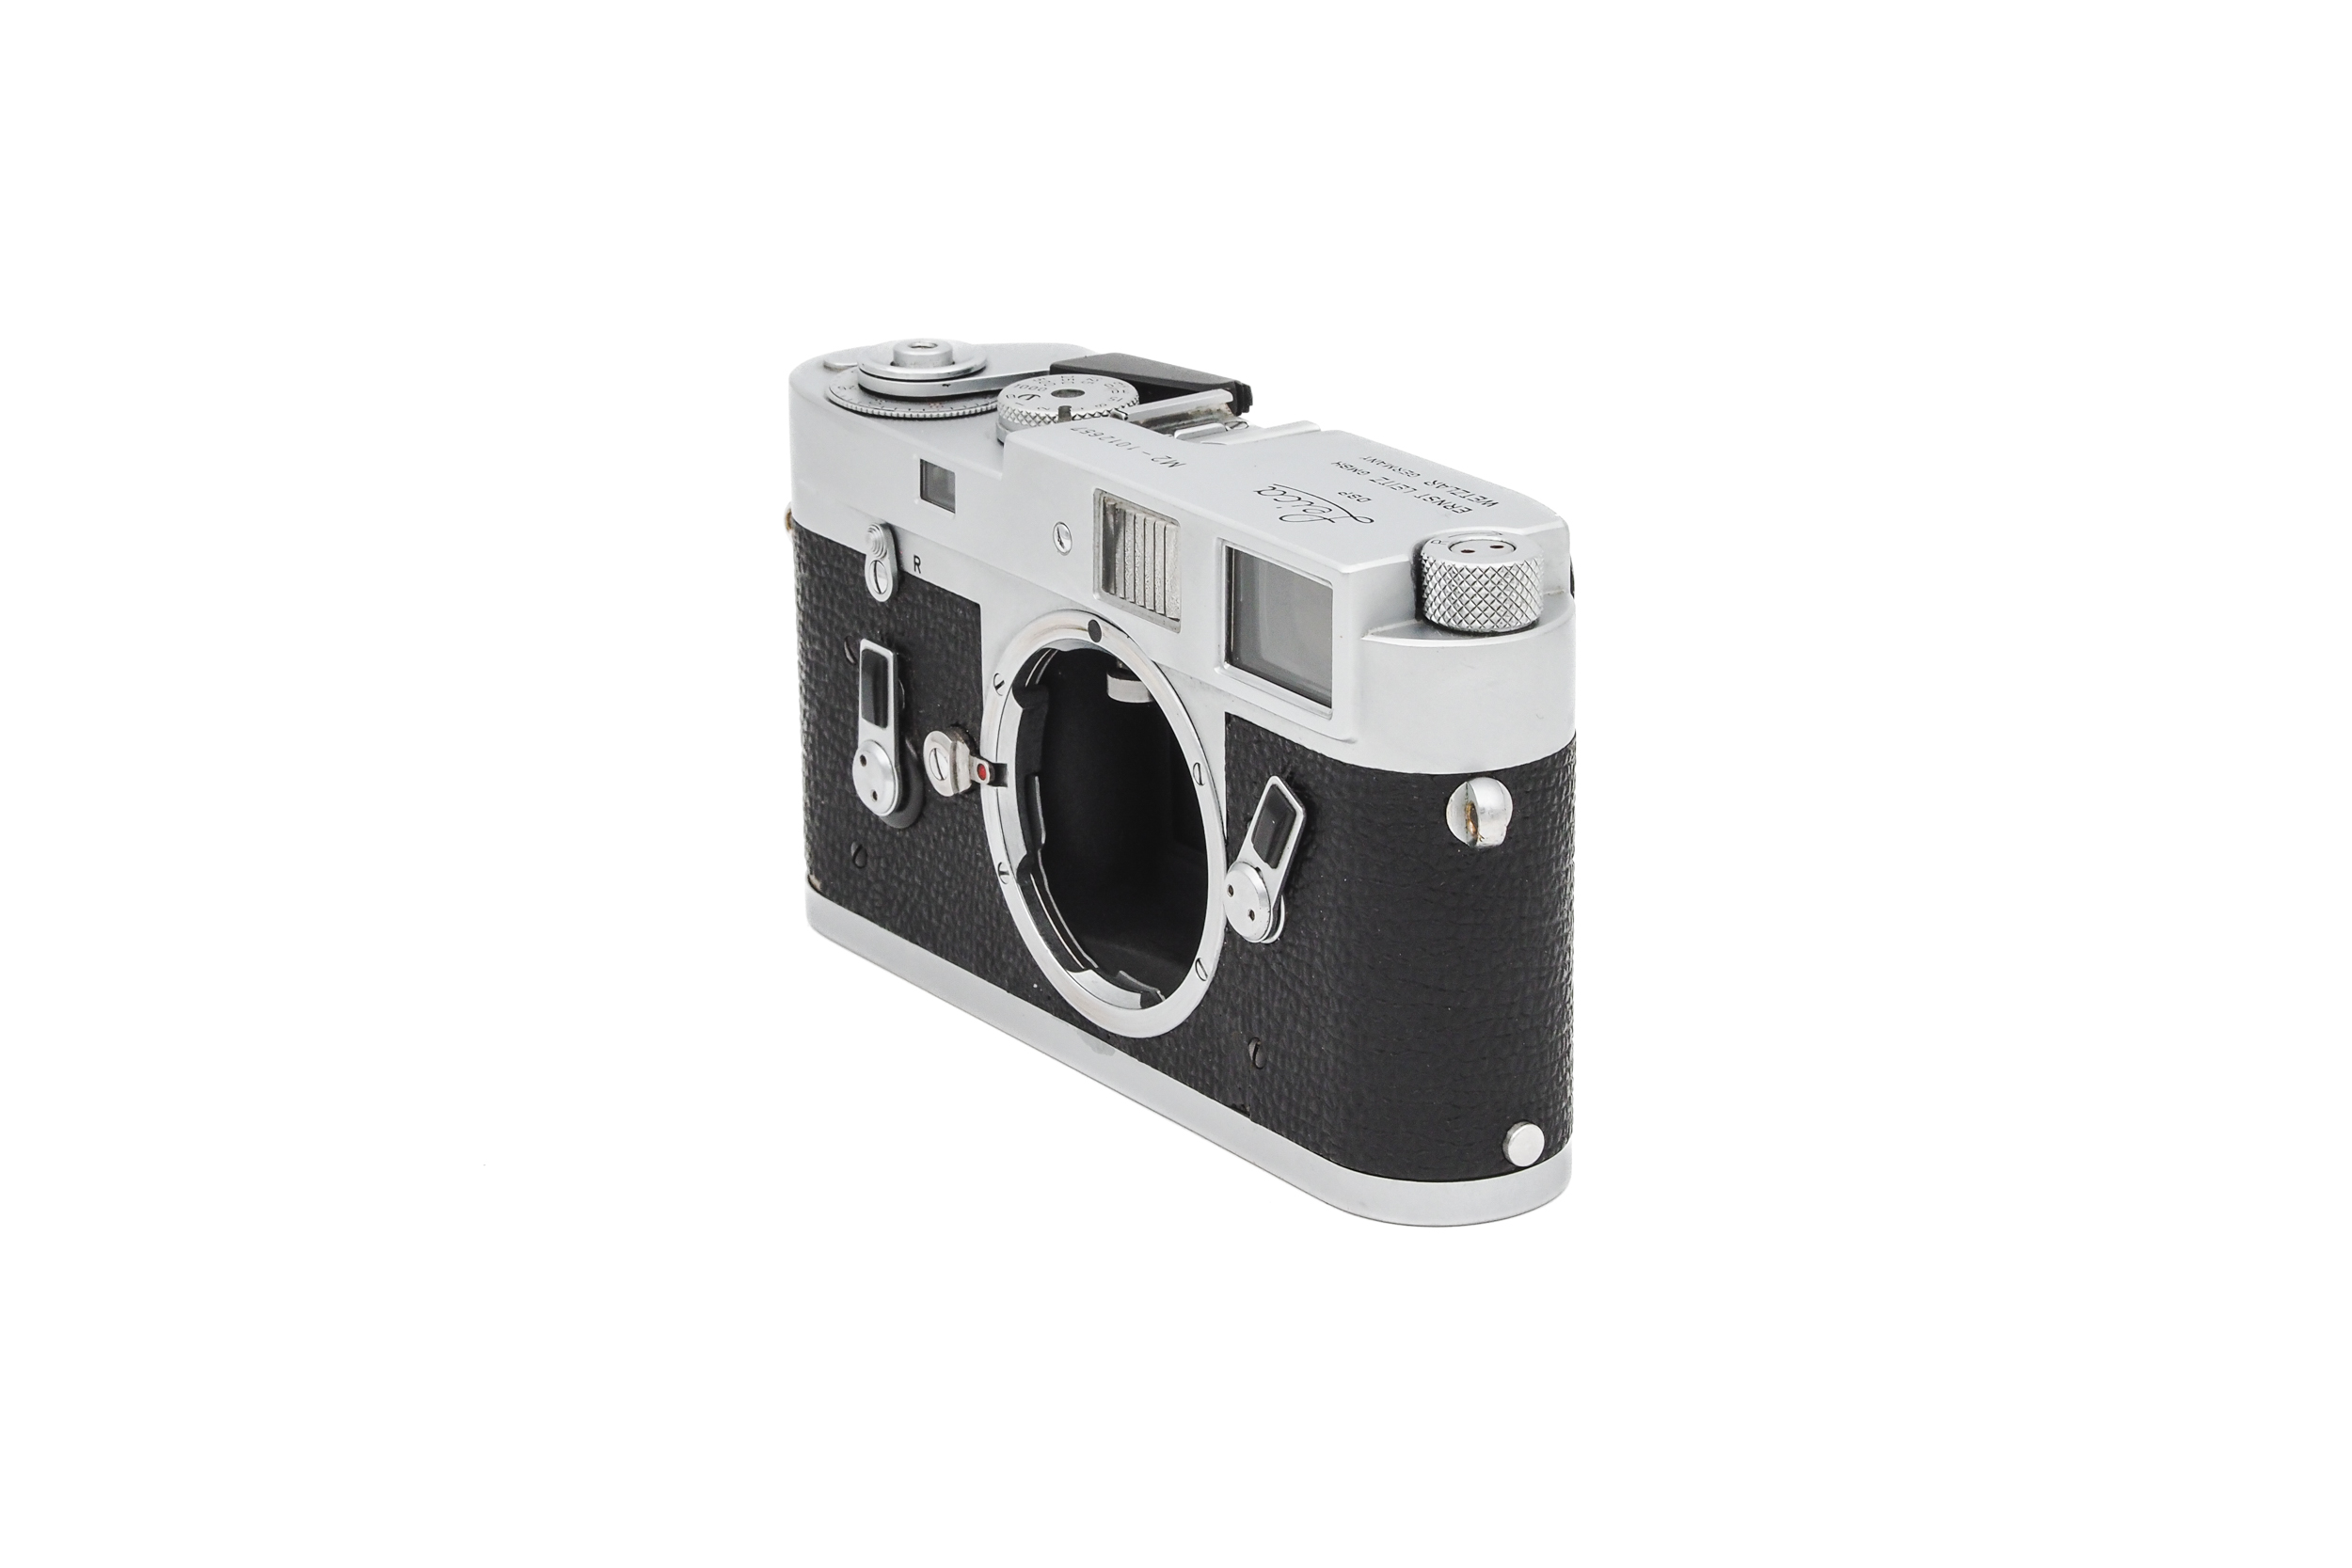 Leica M2 1960